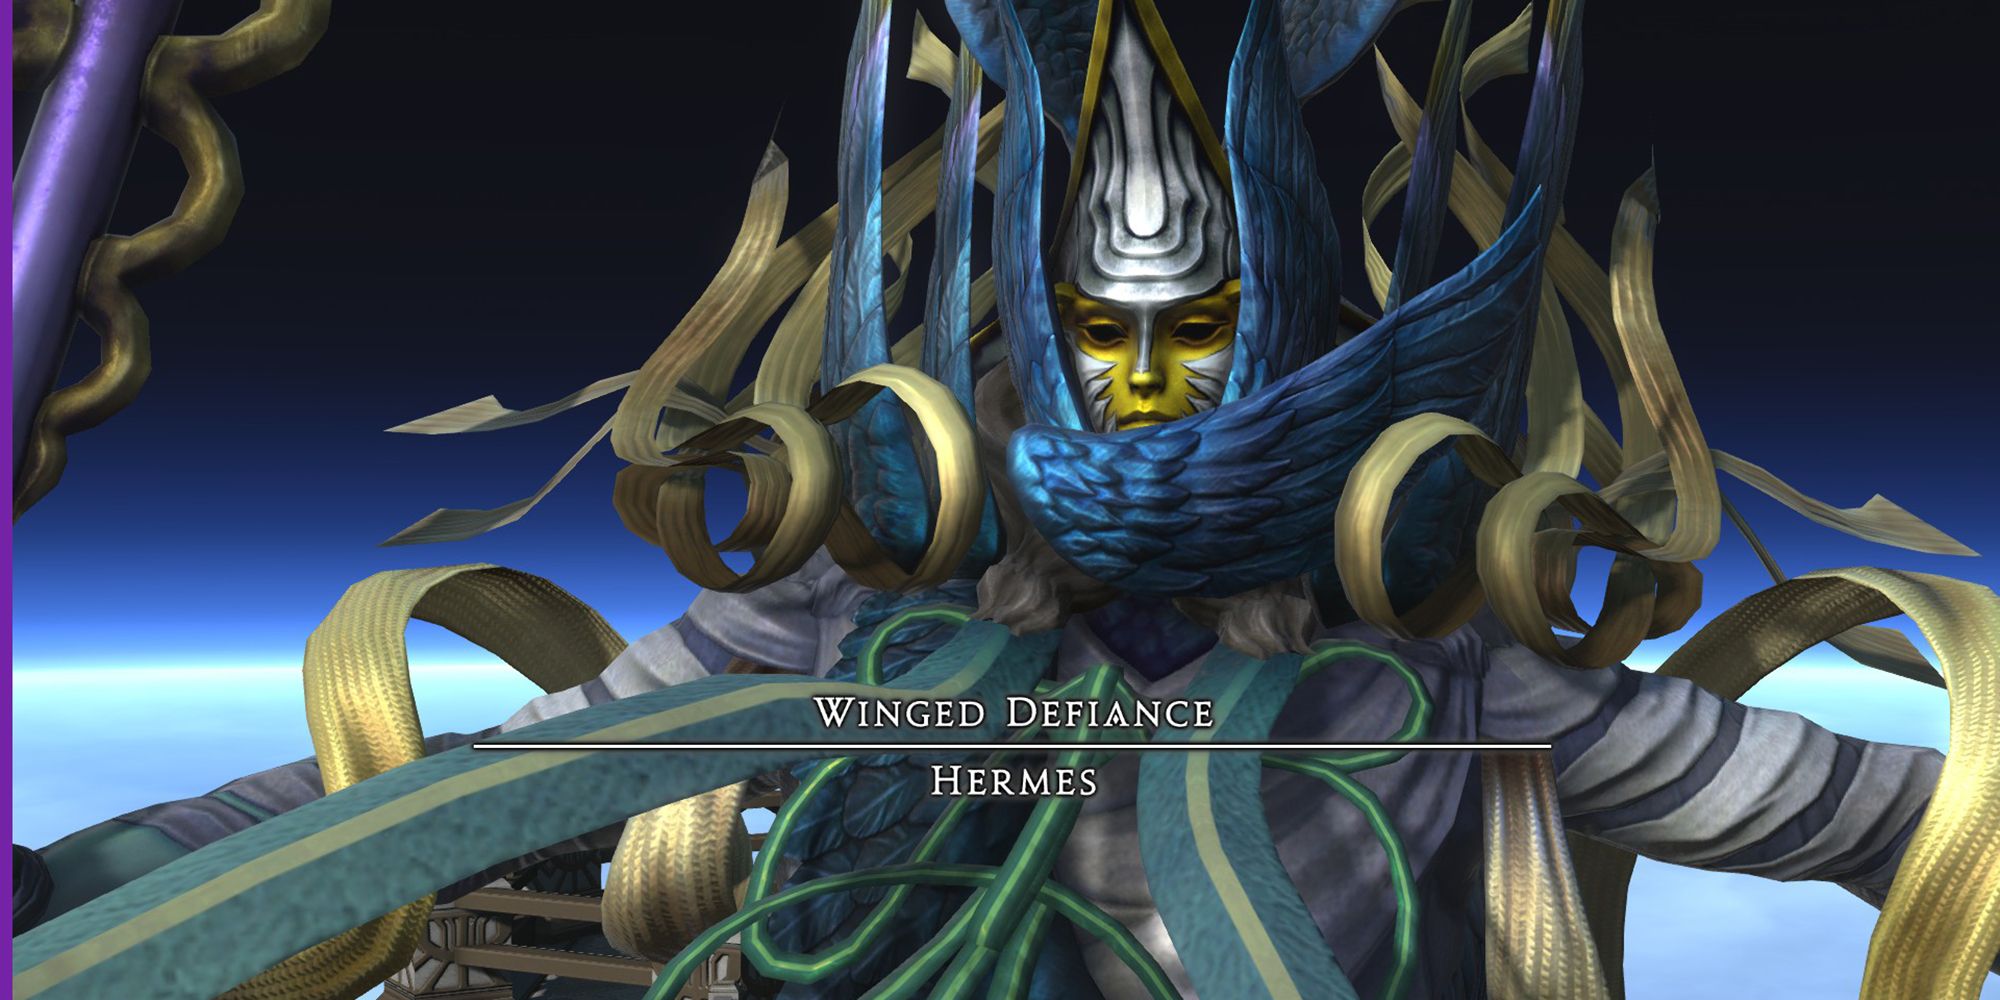 hermes, final boss of Ktisis Hyperboreia dungeon